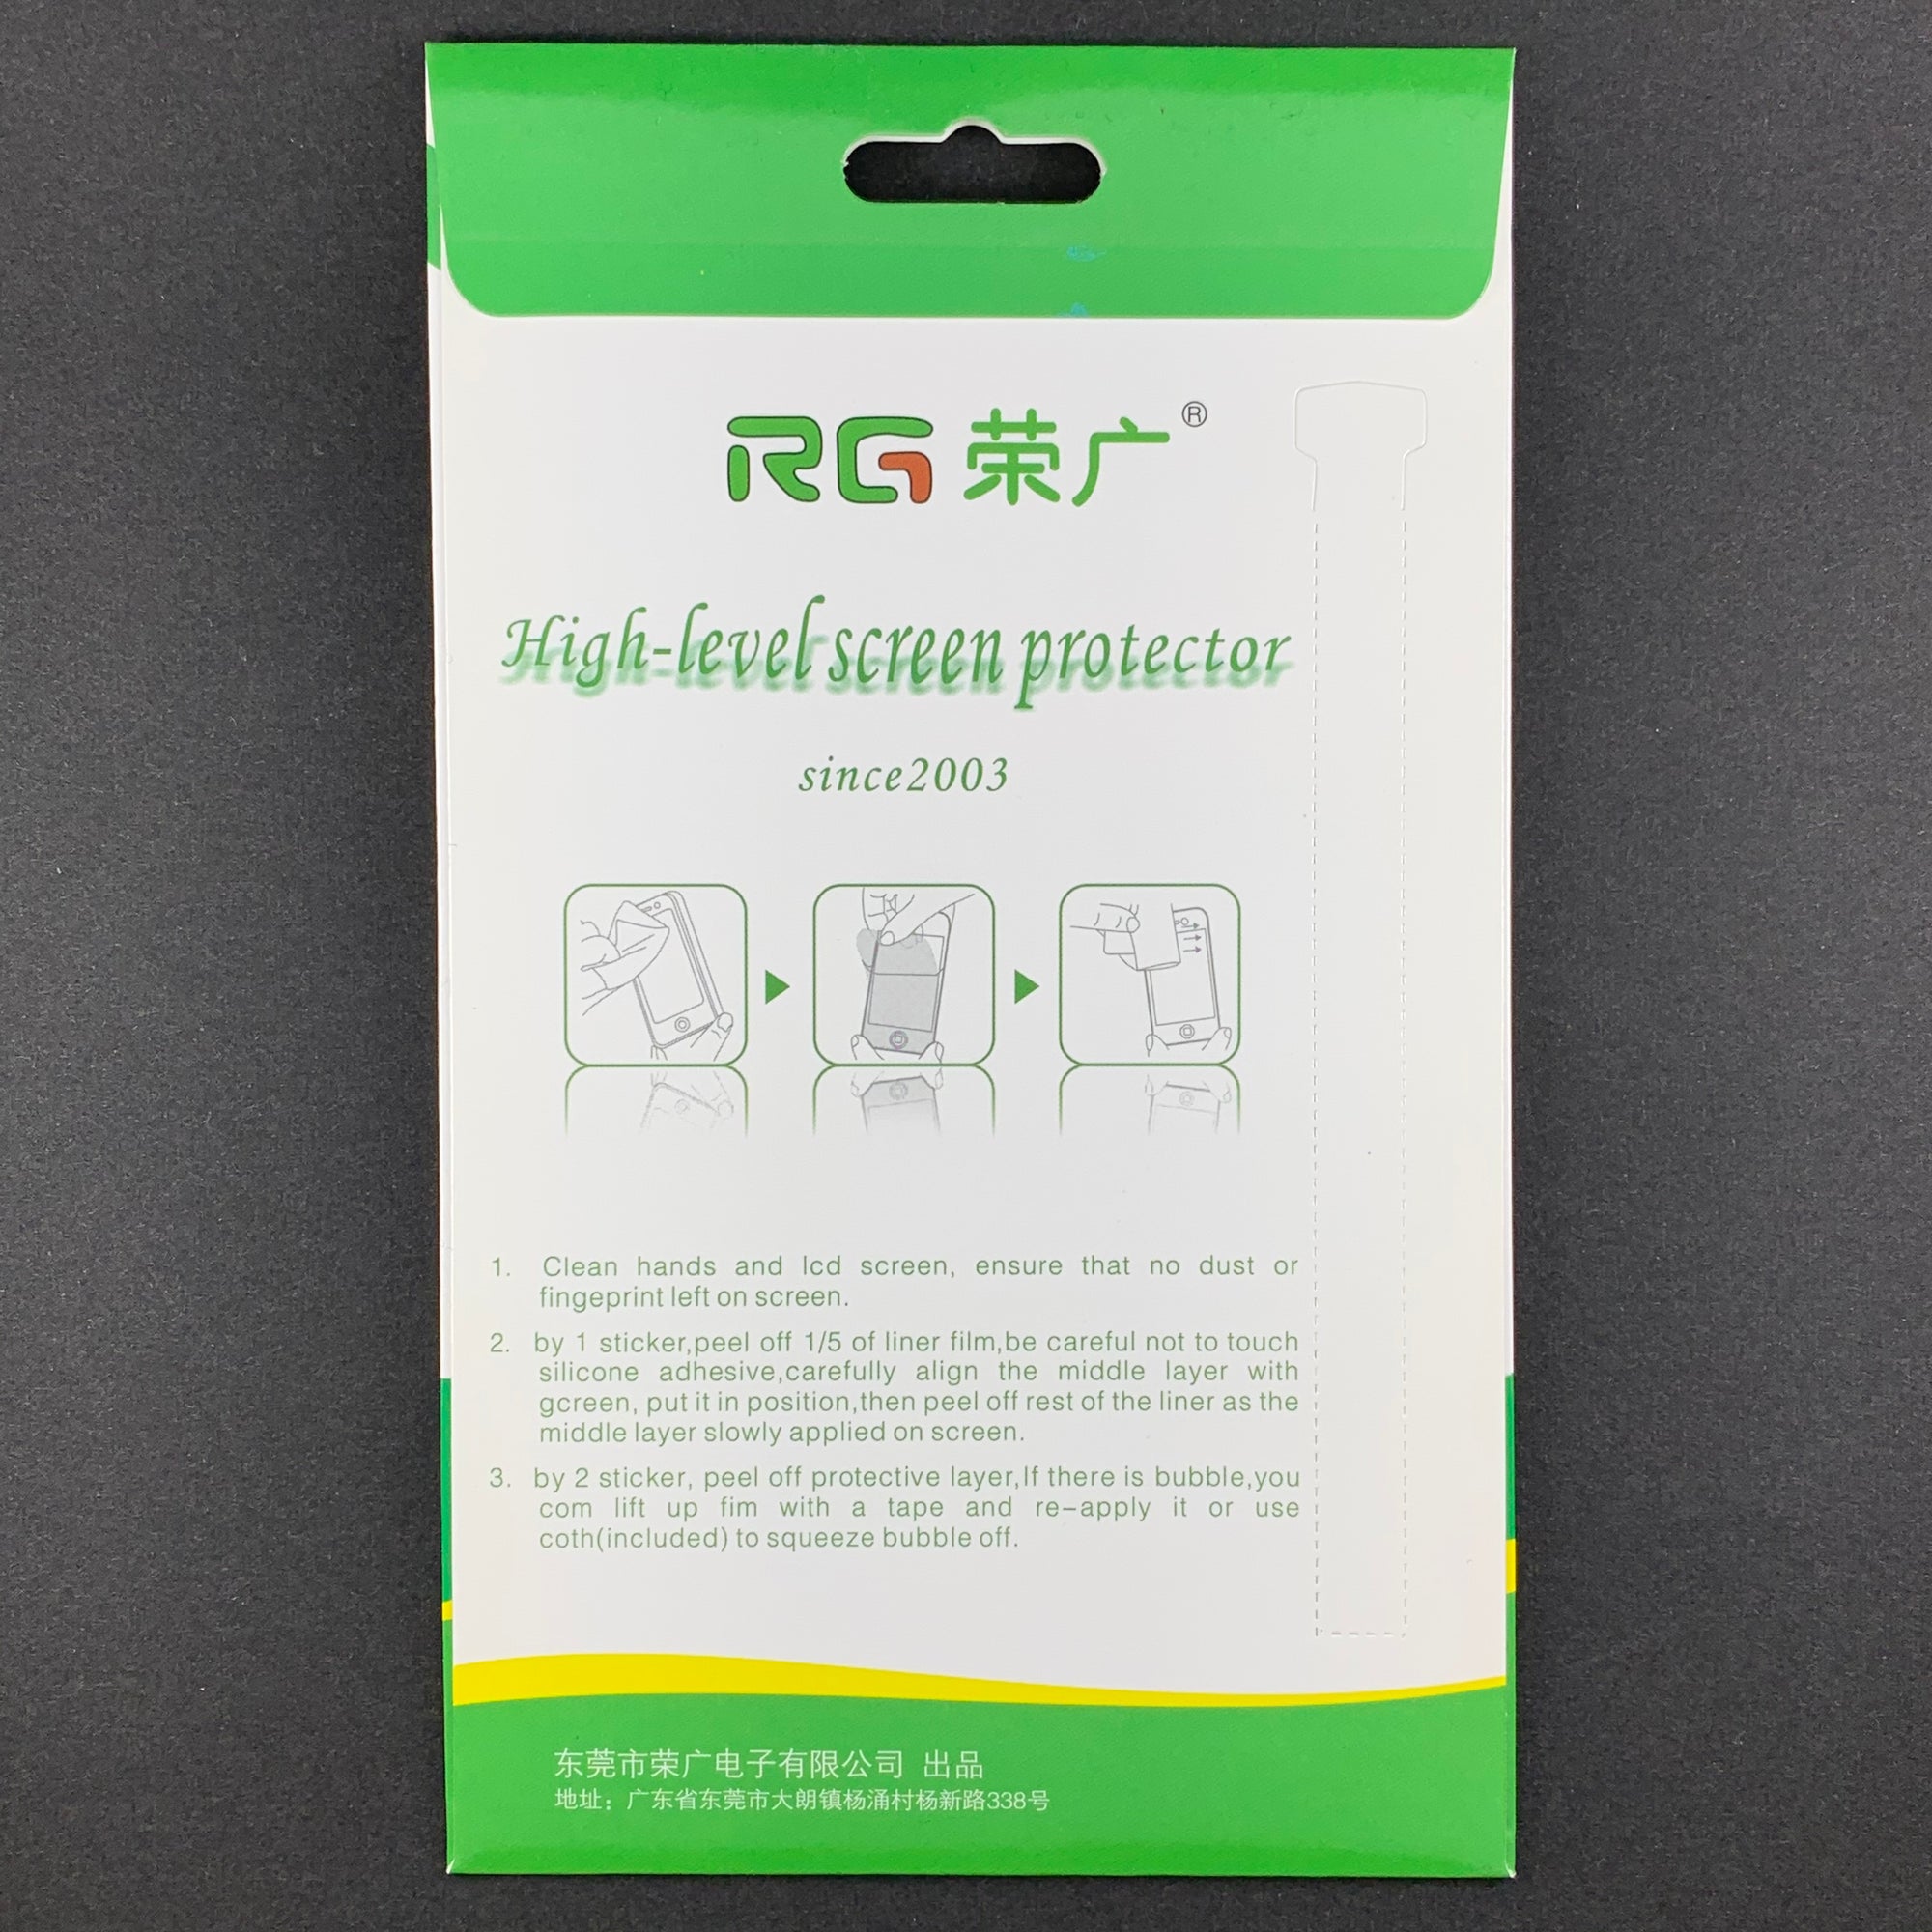 Protecteur d'écran RG Professional Soft Film pour iPad Mini 1 / 2 / 3 (CLEAR, 2-PACK)